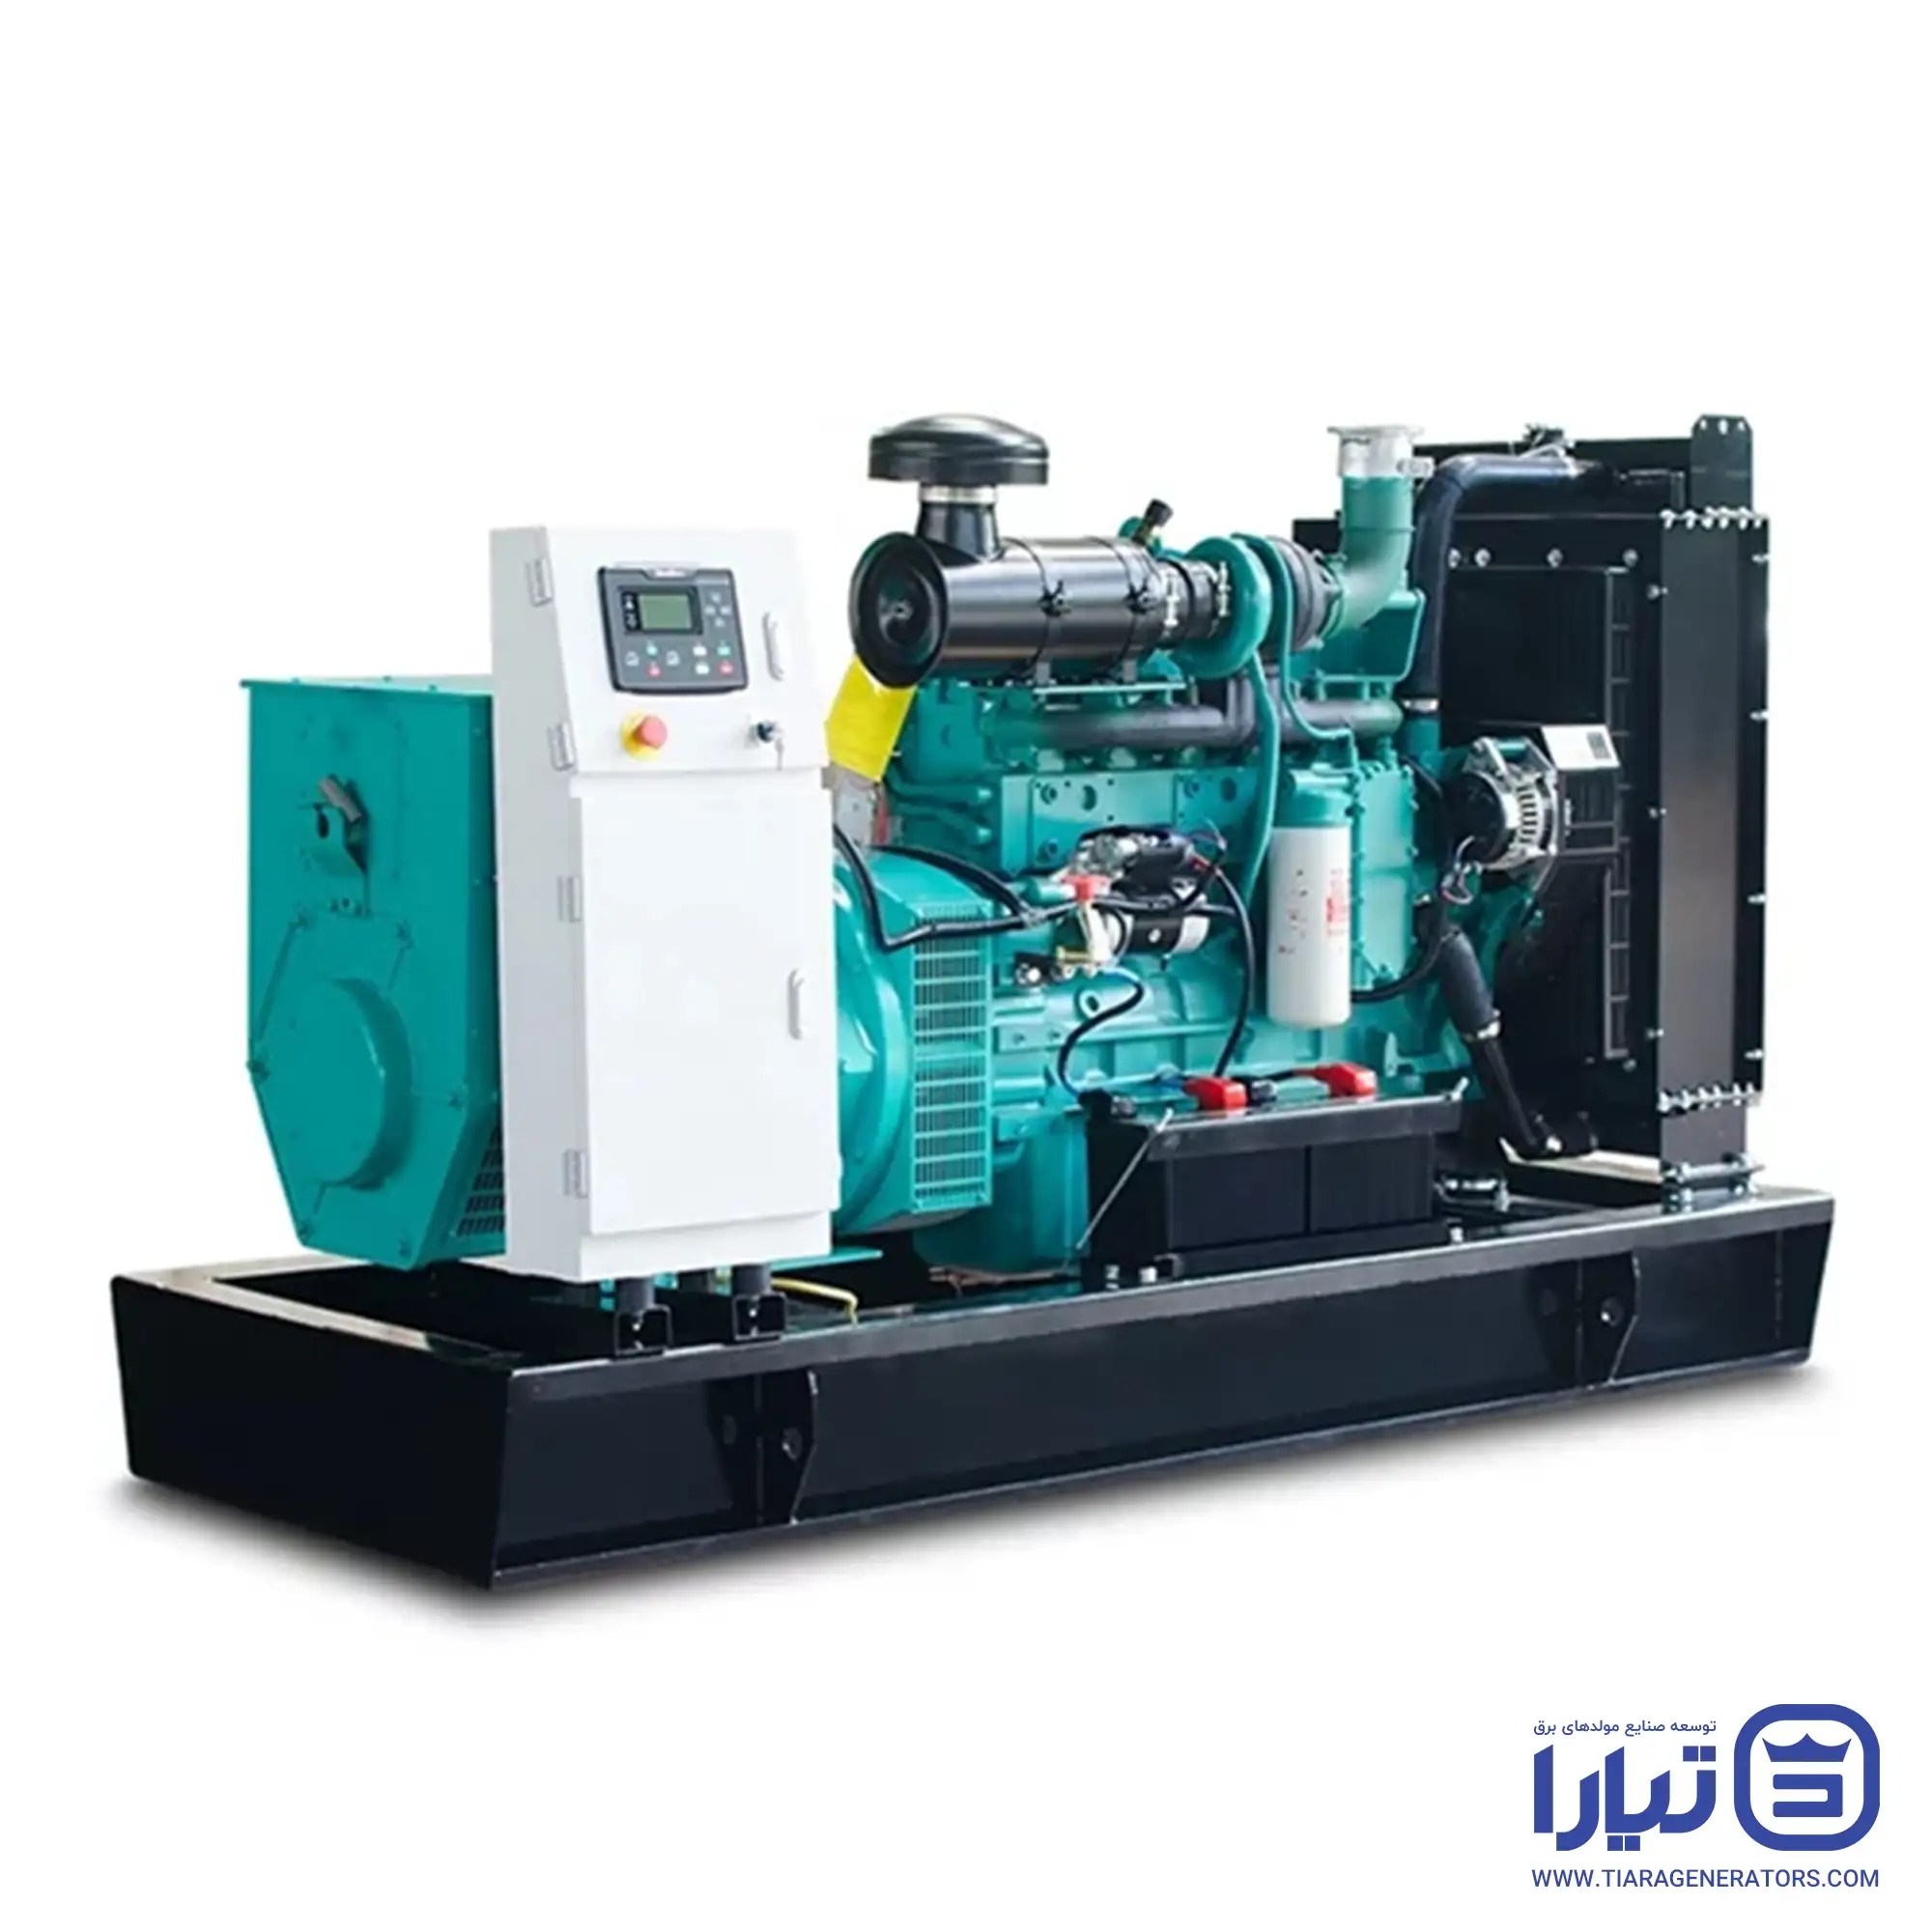 Types-of-diesel-generators-based-on-their-generators